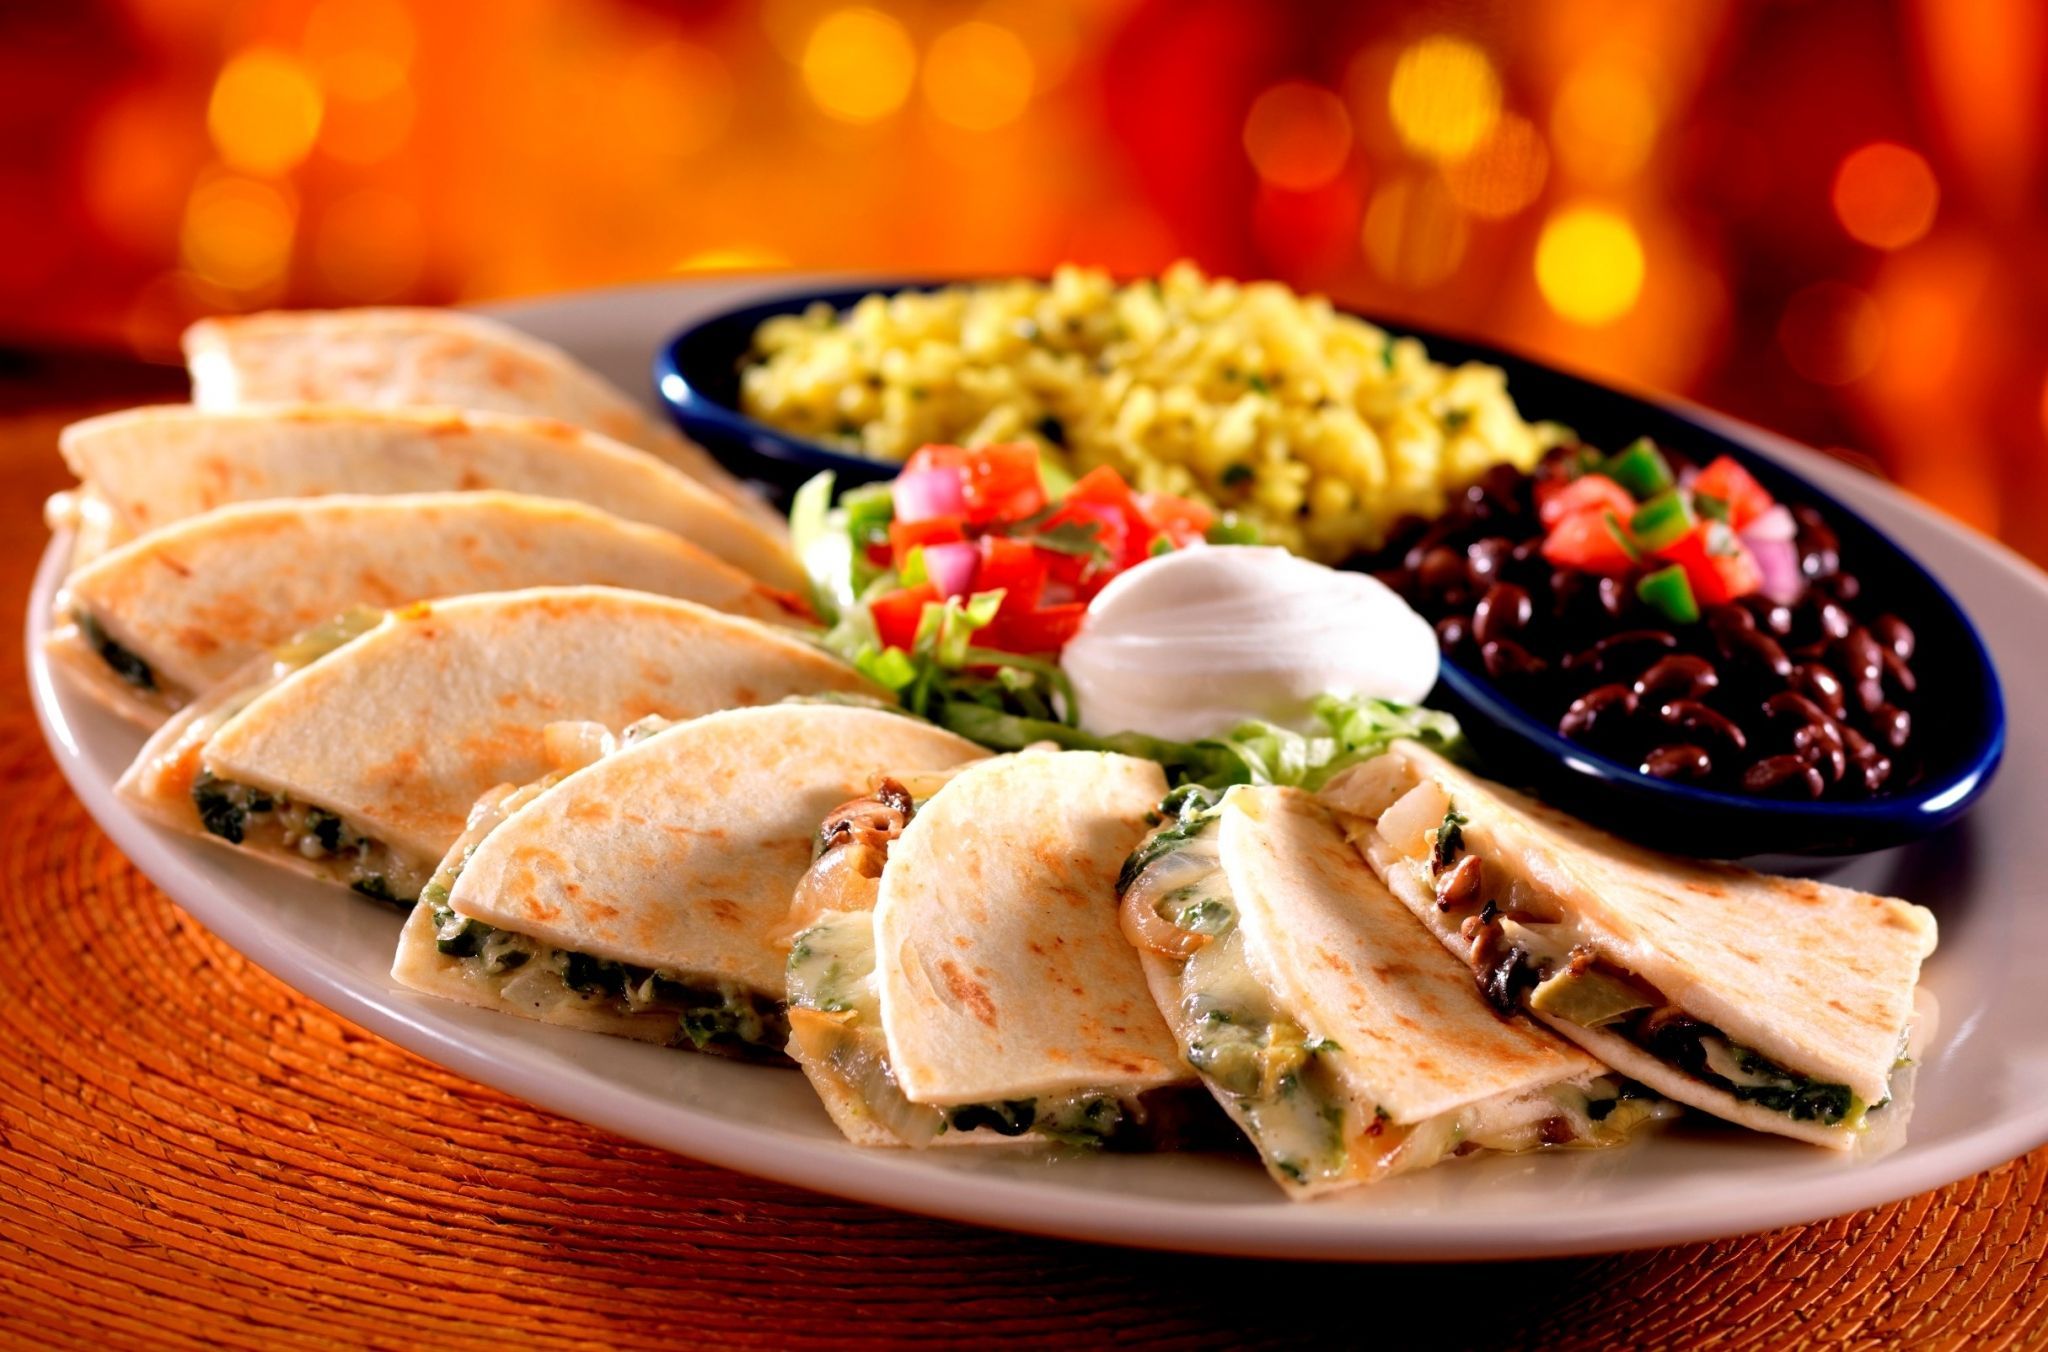 والپیپر زیبا از غذای معروف و لذیذ مکزیکی با کیفیت بالا 